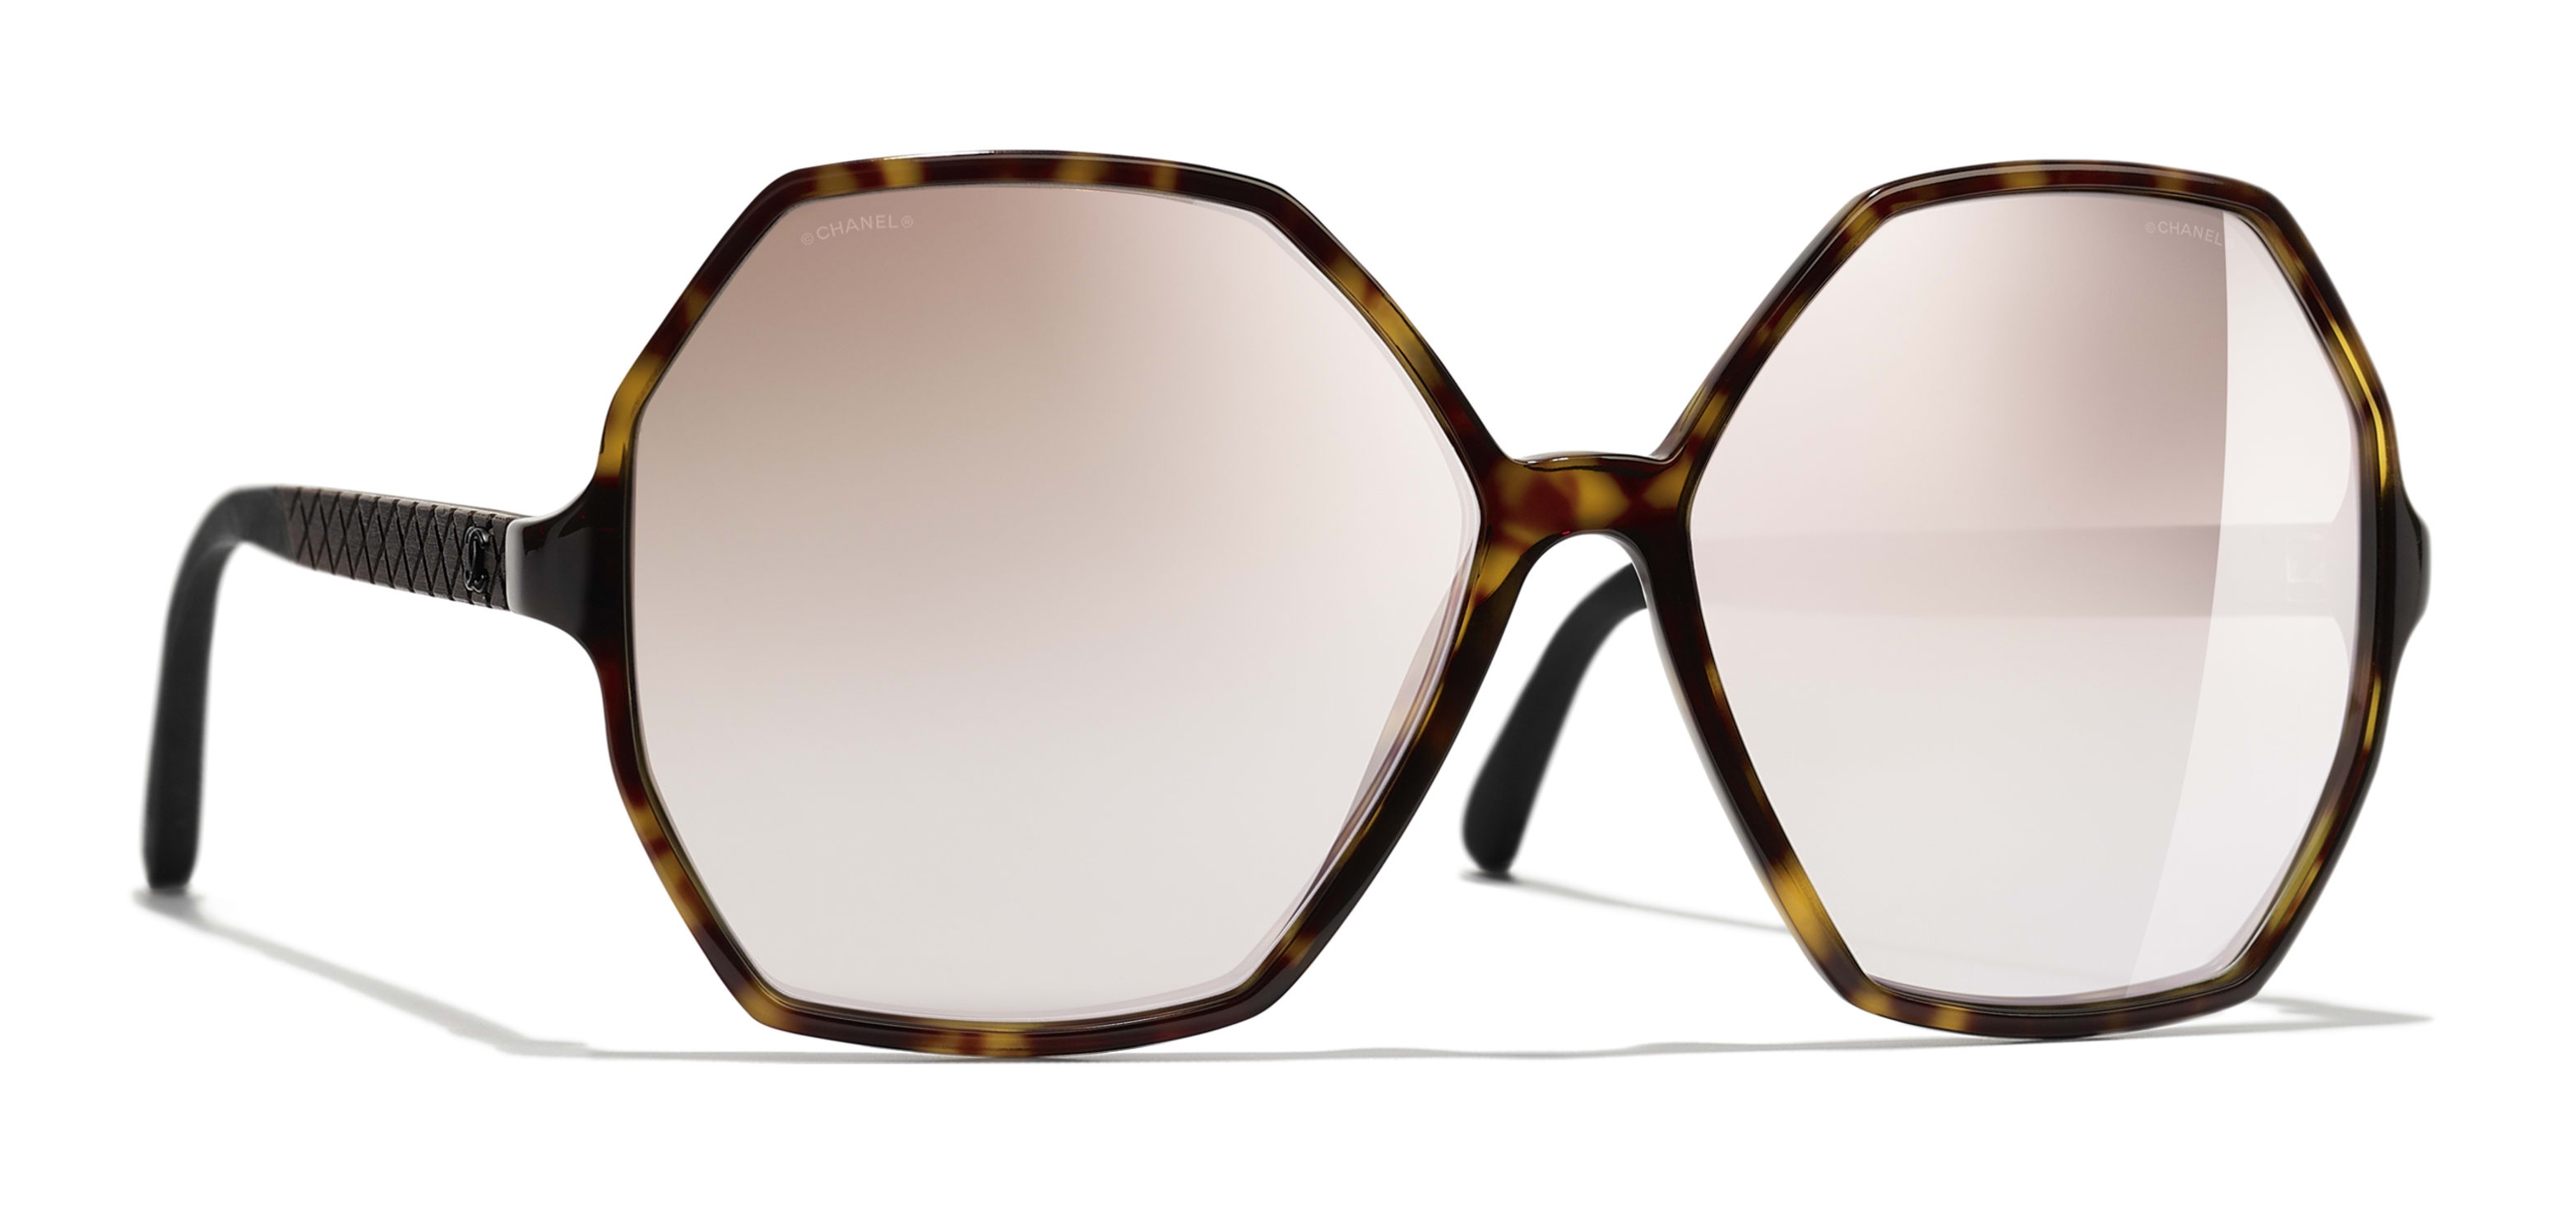 Chanel - Round Sunglasses - Dark Tortoise Beige Mirror - Chanel Eyewear -  Avvenice